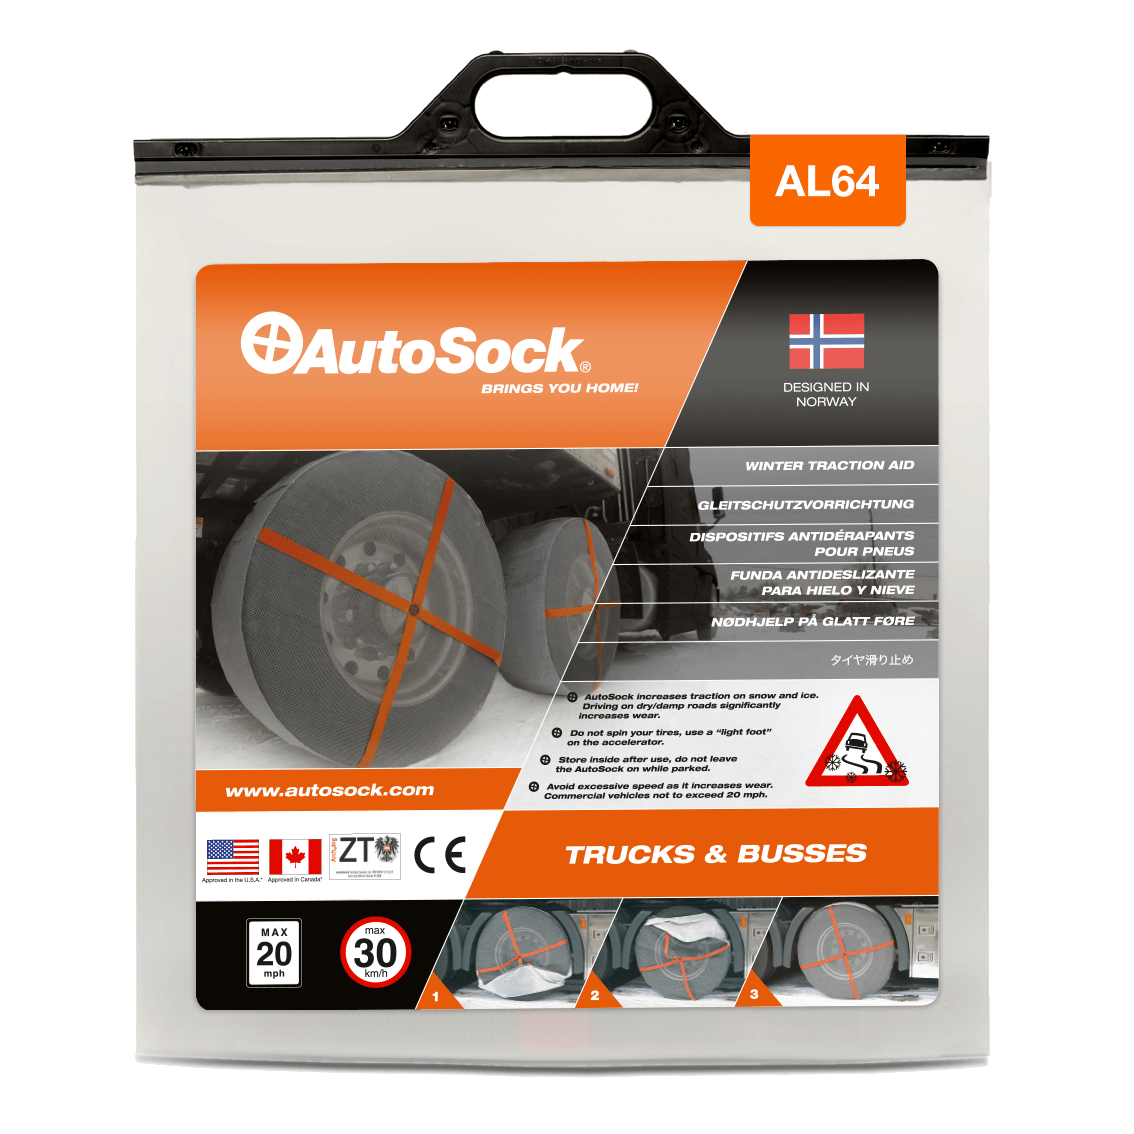 Emballage du produit AutoSock AL 64 AL64 pour camions (vue de face)